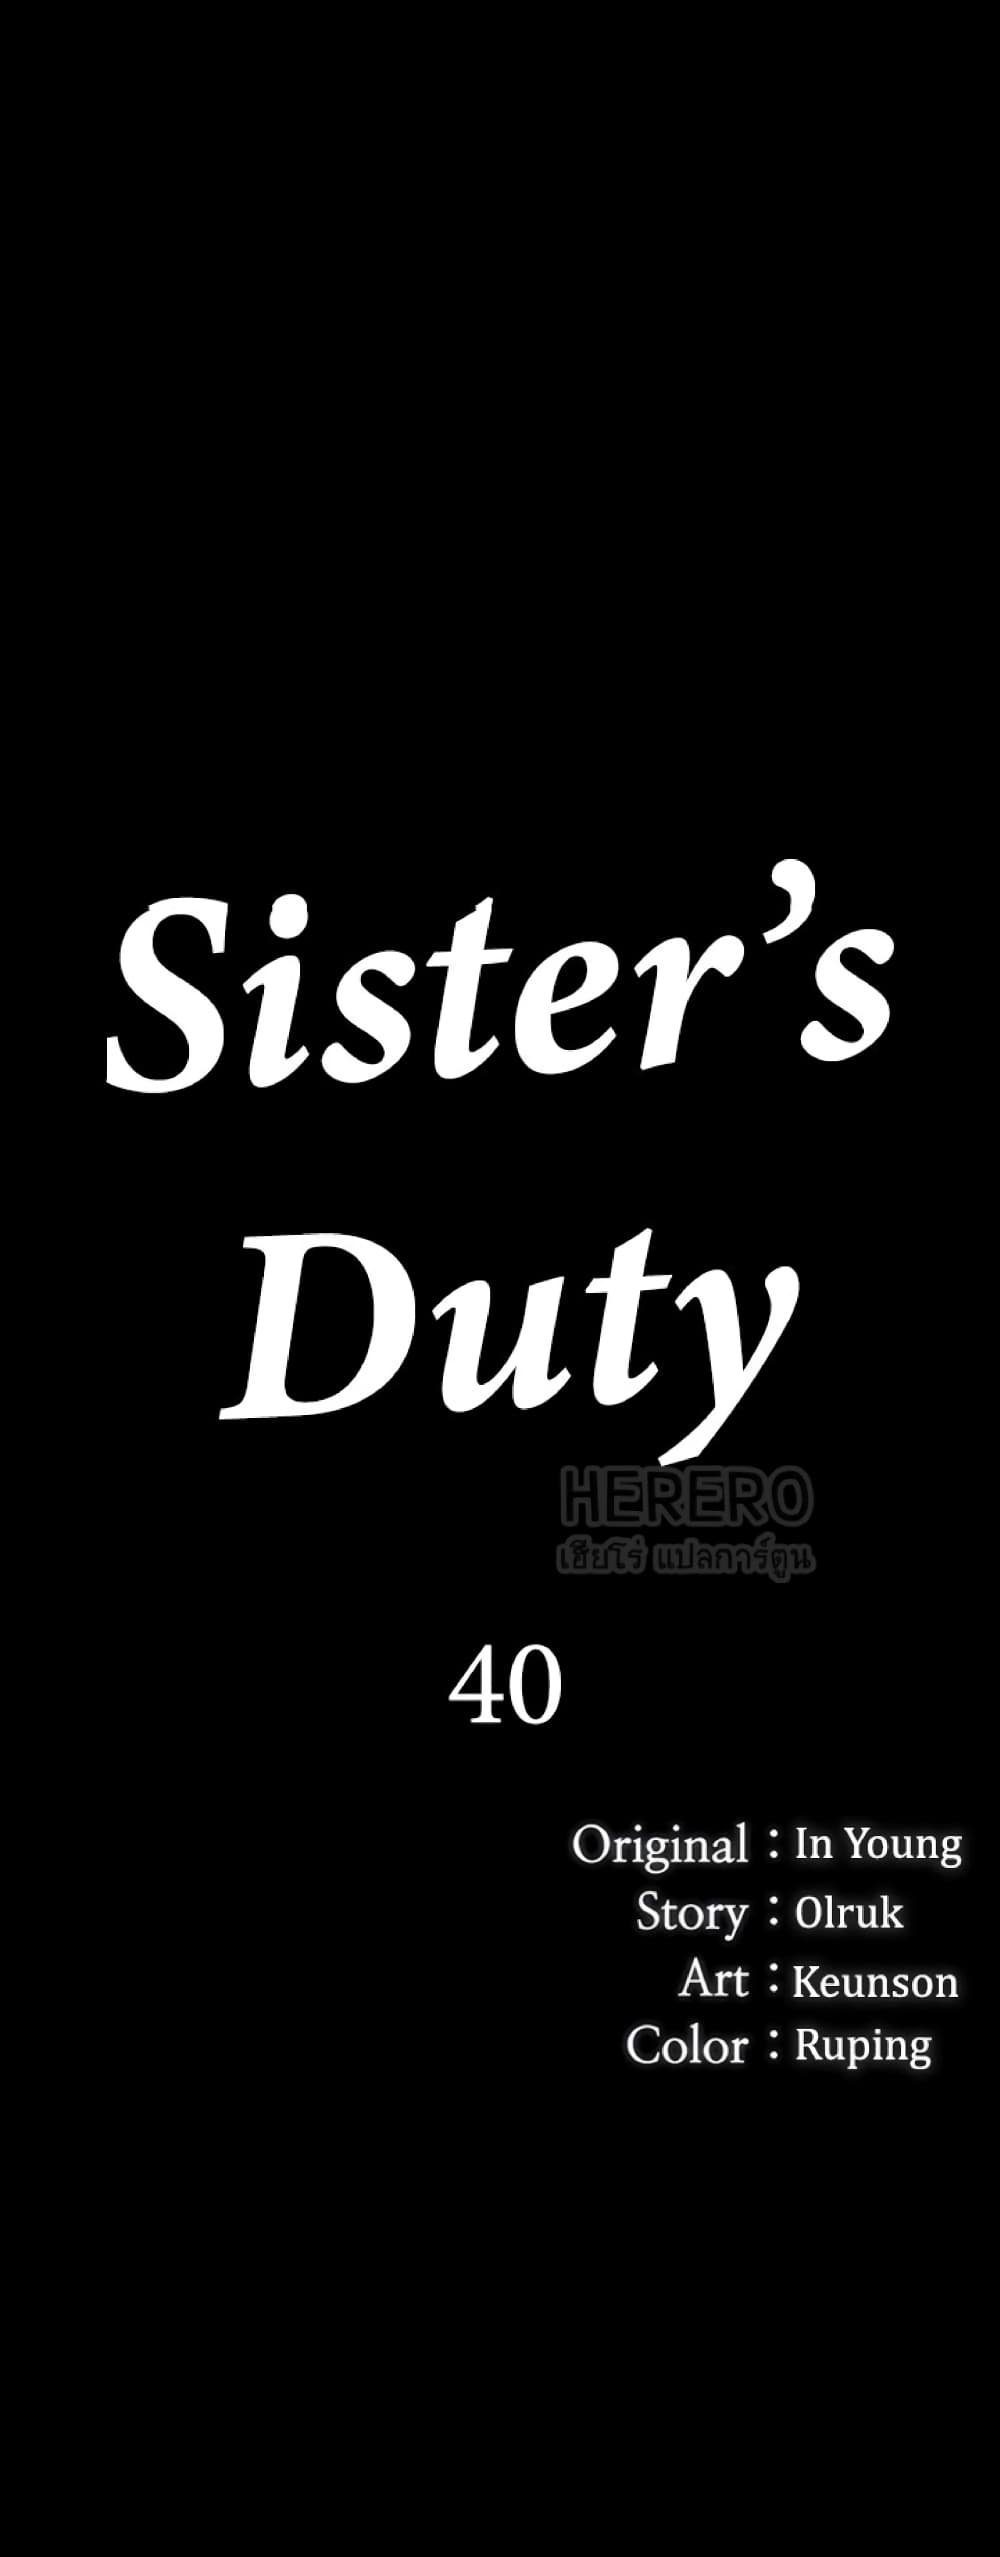 Sister's Duty 40 (9)